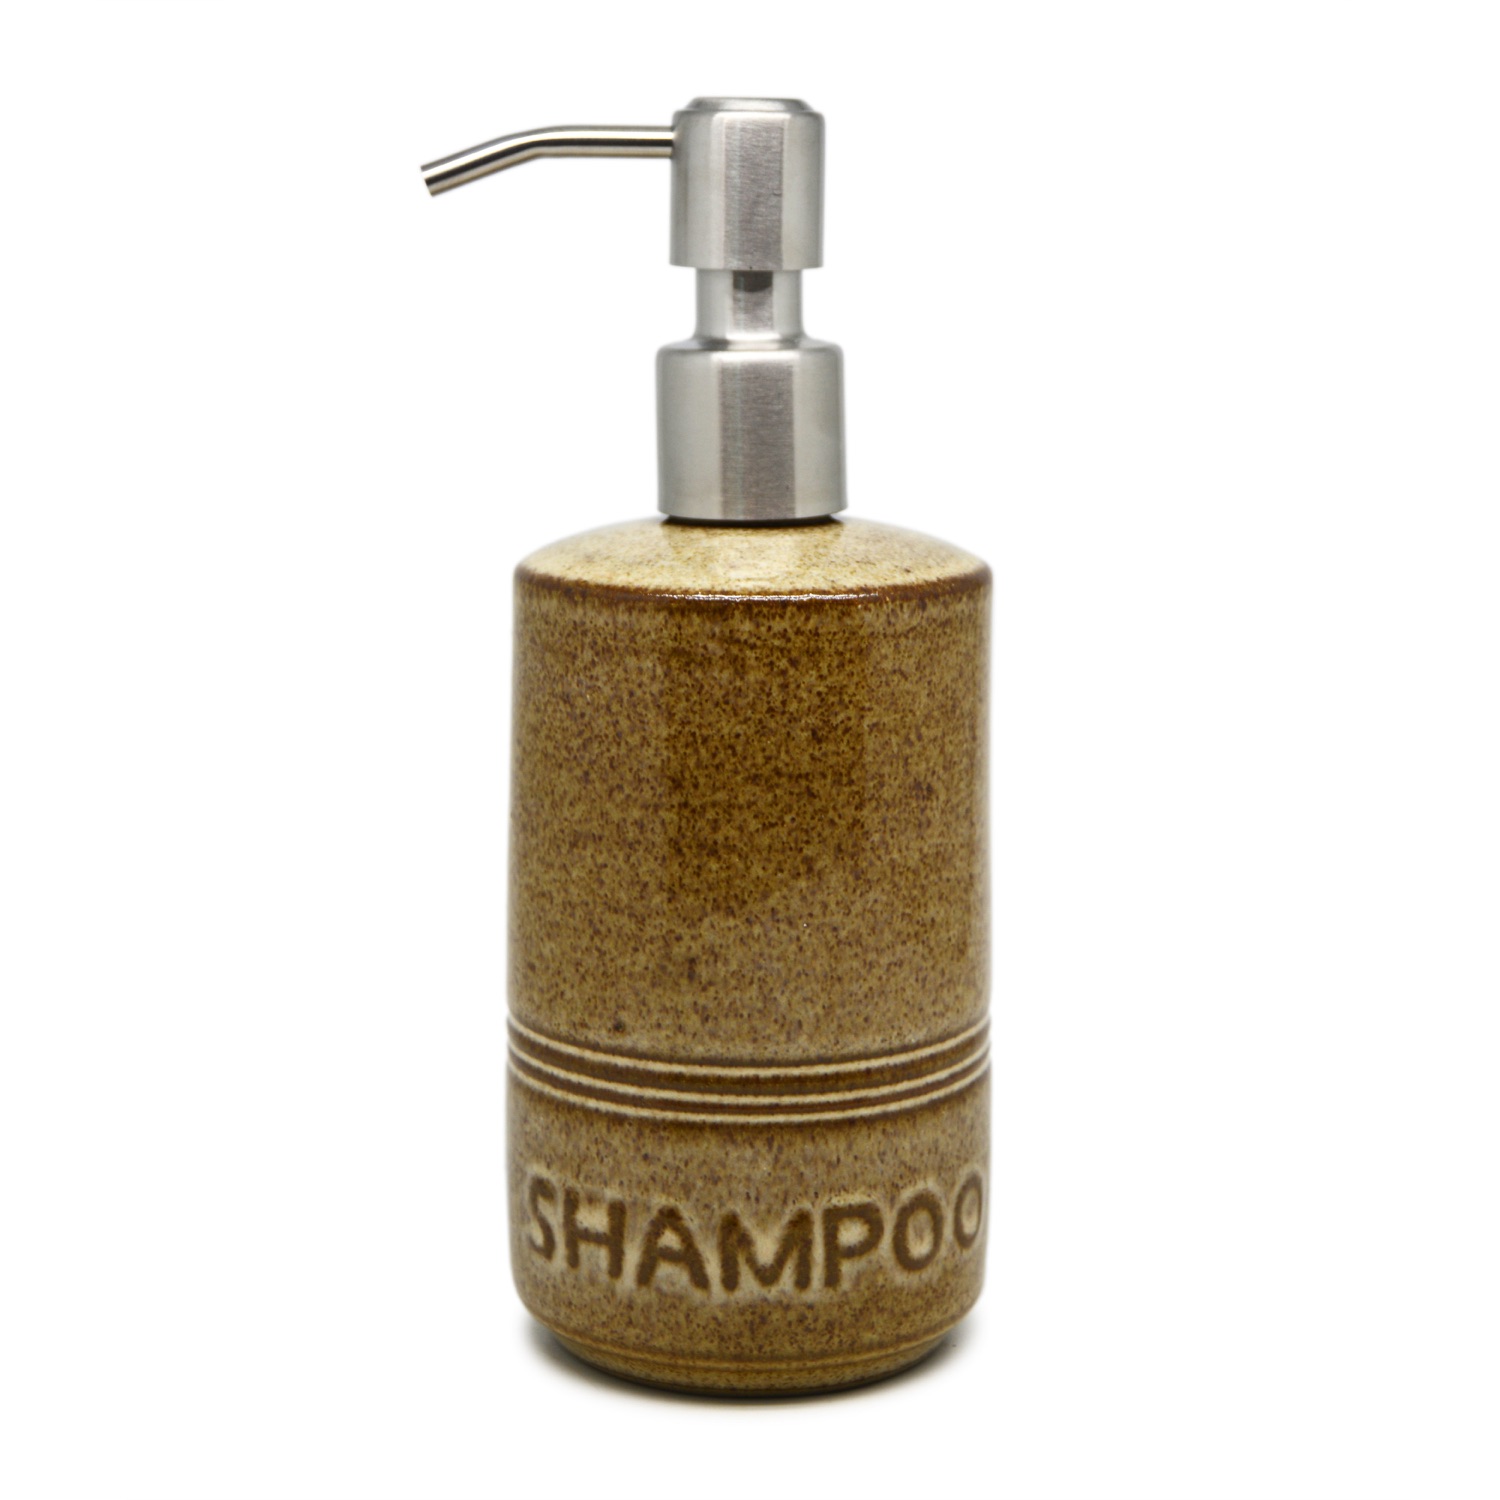 Pillar Liquid Dispenser - Shampoo - Stainless Steel Pump